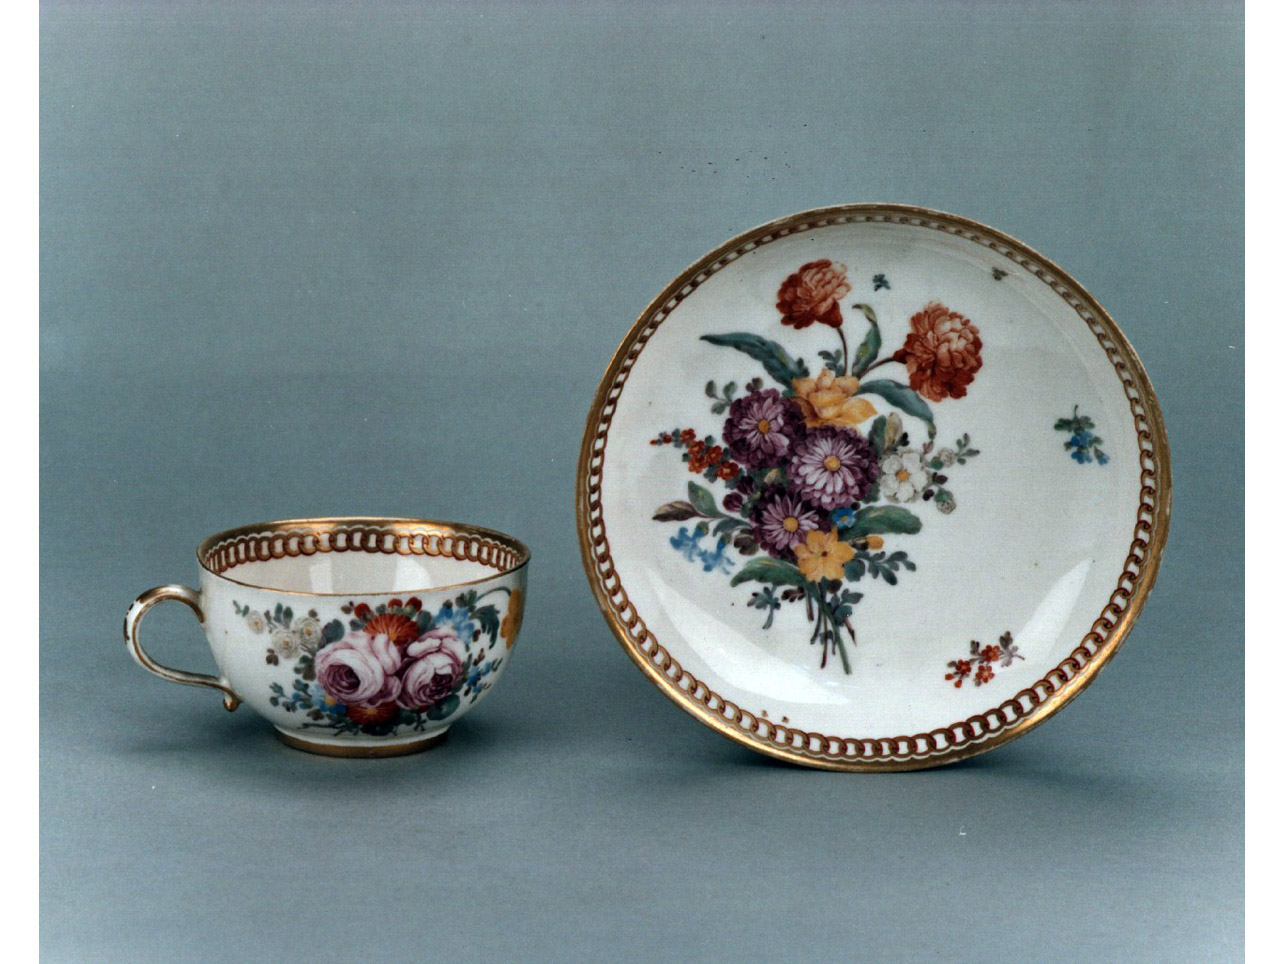 motivi decorativi floreali (servizio da thè, insieme) - manifattura di Nymphenburg (sec. XVIII)